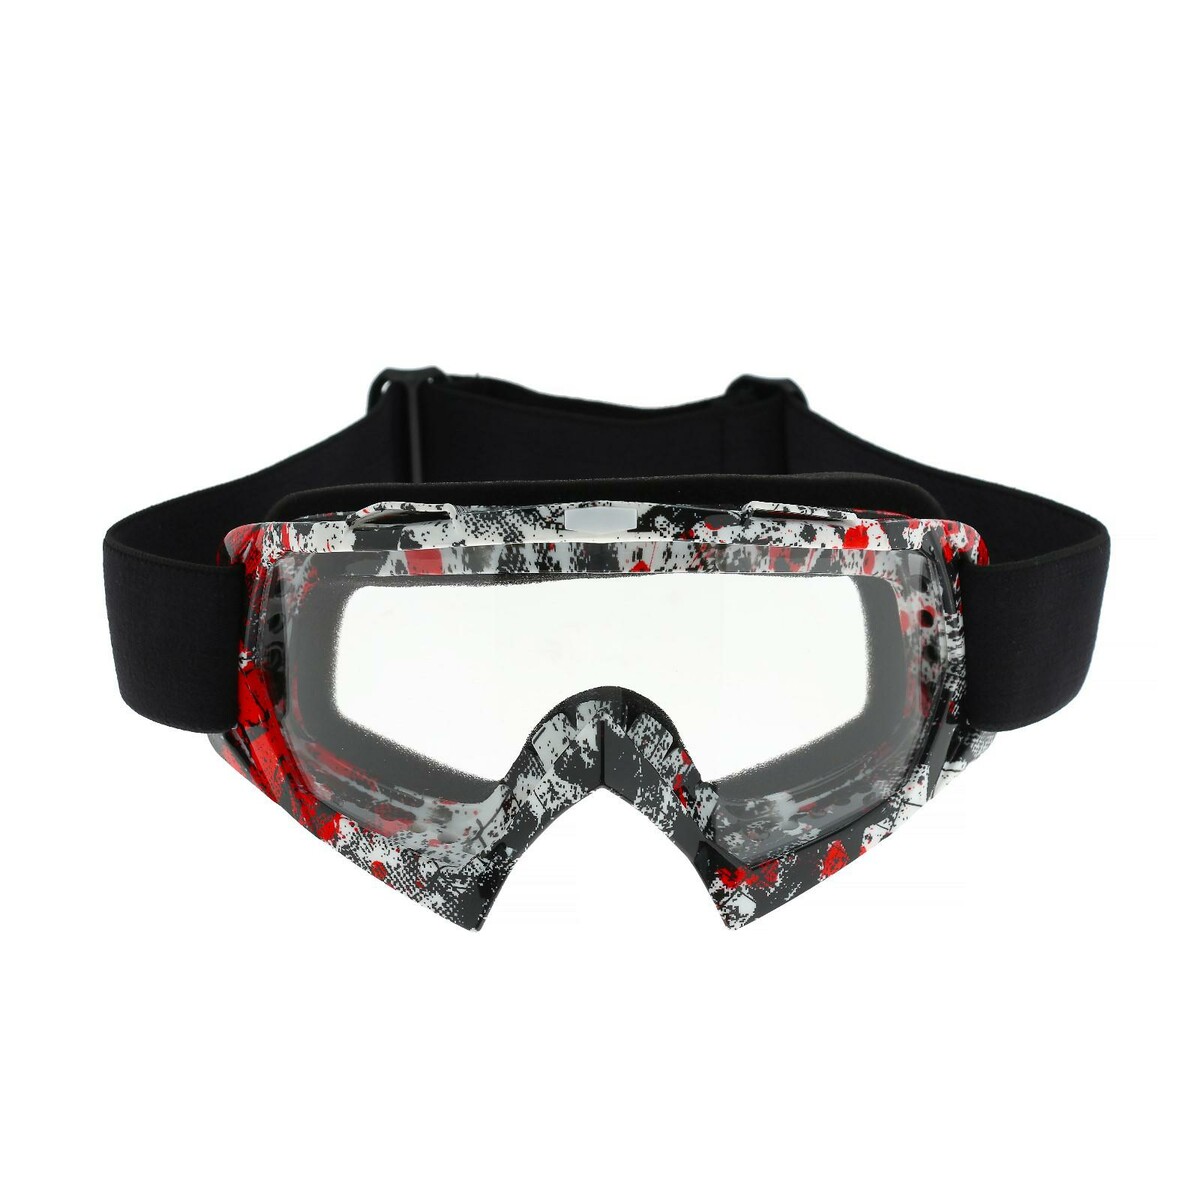 Очки-маска для езды на мототехнике, стекло прозрачное, цвет красный-черный, ом-21 маска для плавания salvas geo md mask ca140s1rysth красный